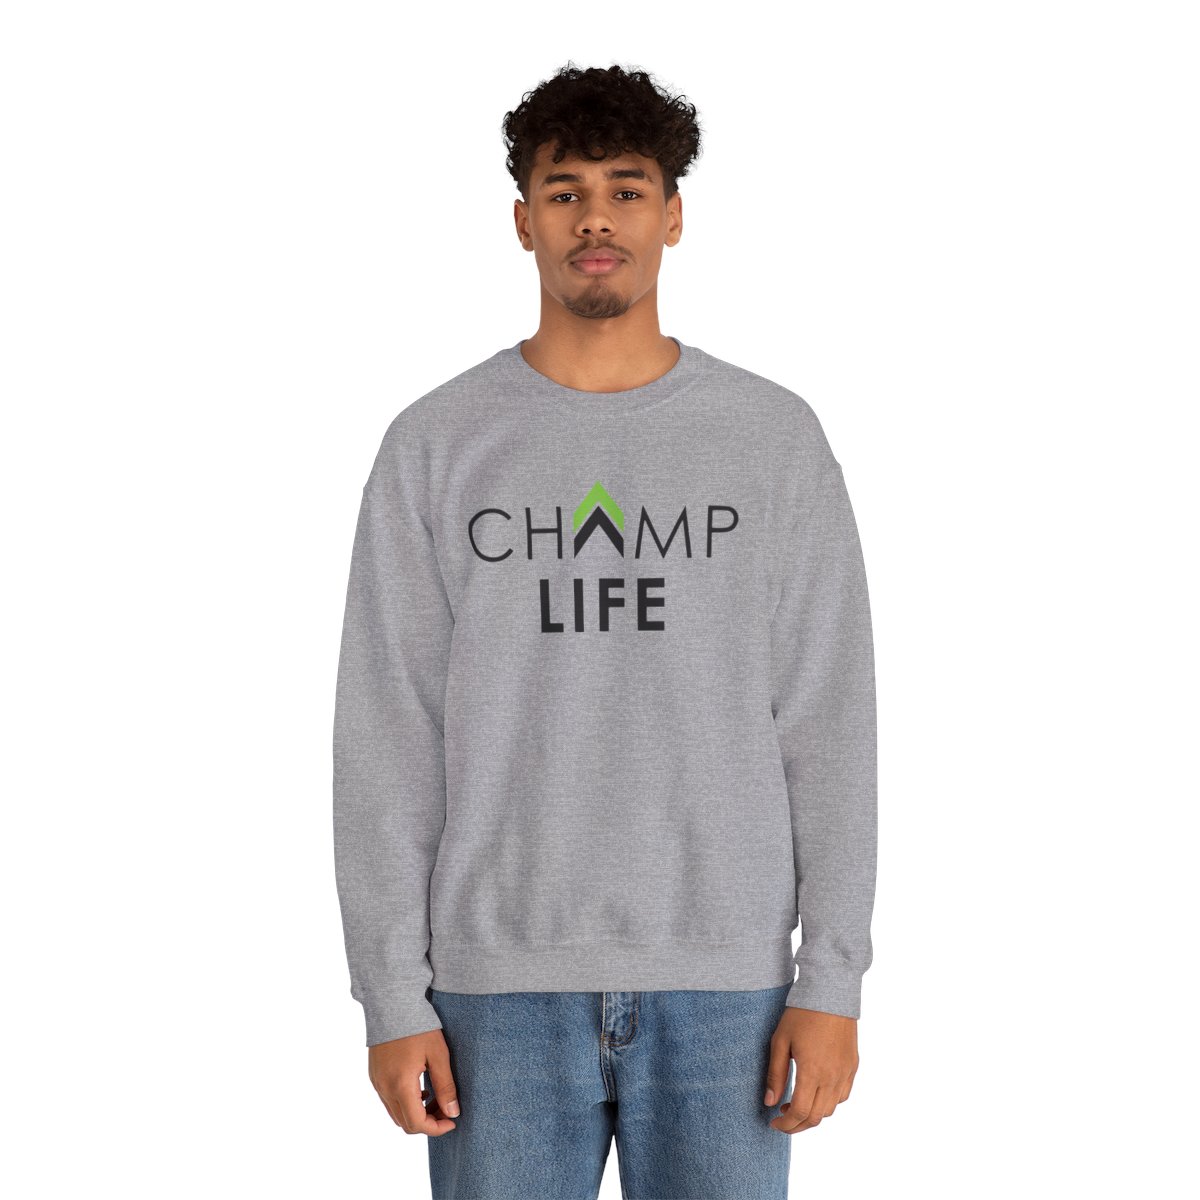 Champ Life Unisex Crewneck Sweatshirt - White, Gray product thumbnail image